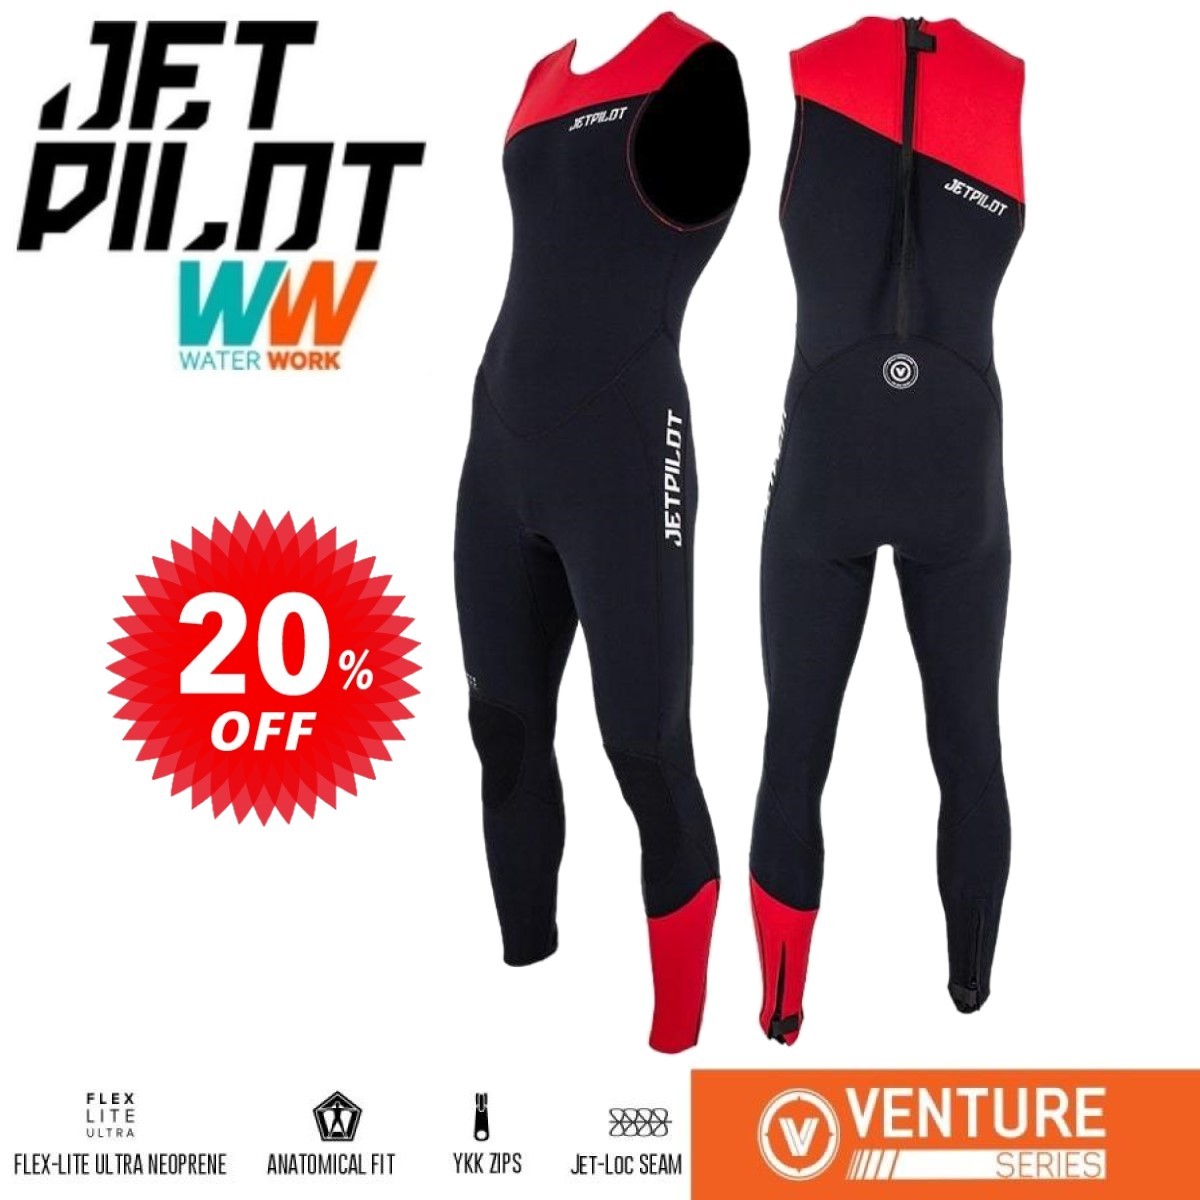 ジェットパイロット JETPILOT セール 20%オフ 送料無料 ウェットスーツ メンズ ベンチャー ジョン JA21154 ブラック/レッド M